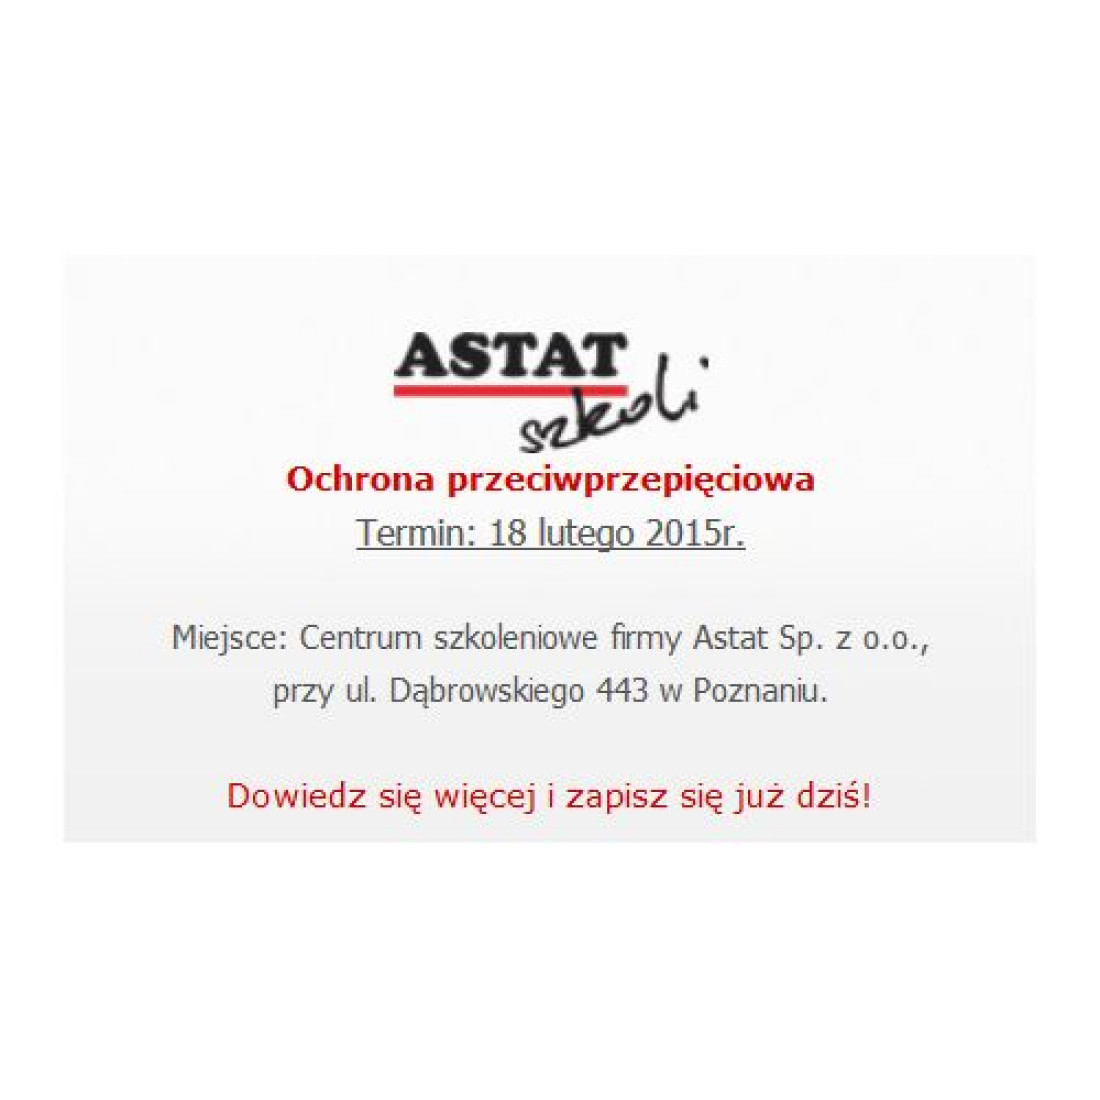 Firma ASTAT zaprasza na bezpłatne szkolenie "Ochrona przeciwprzepięciowa" 